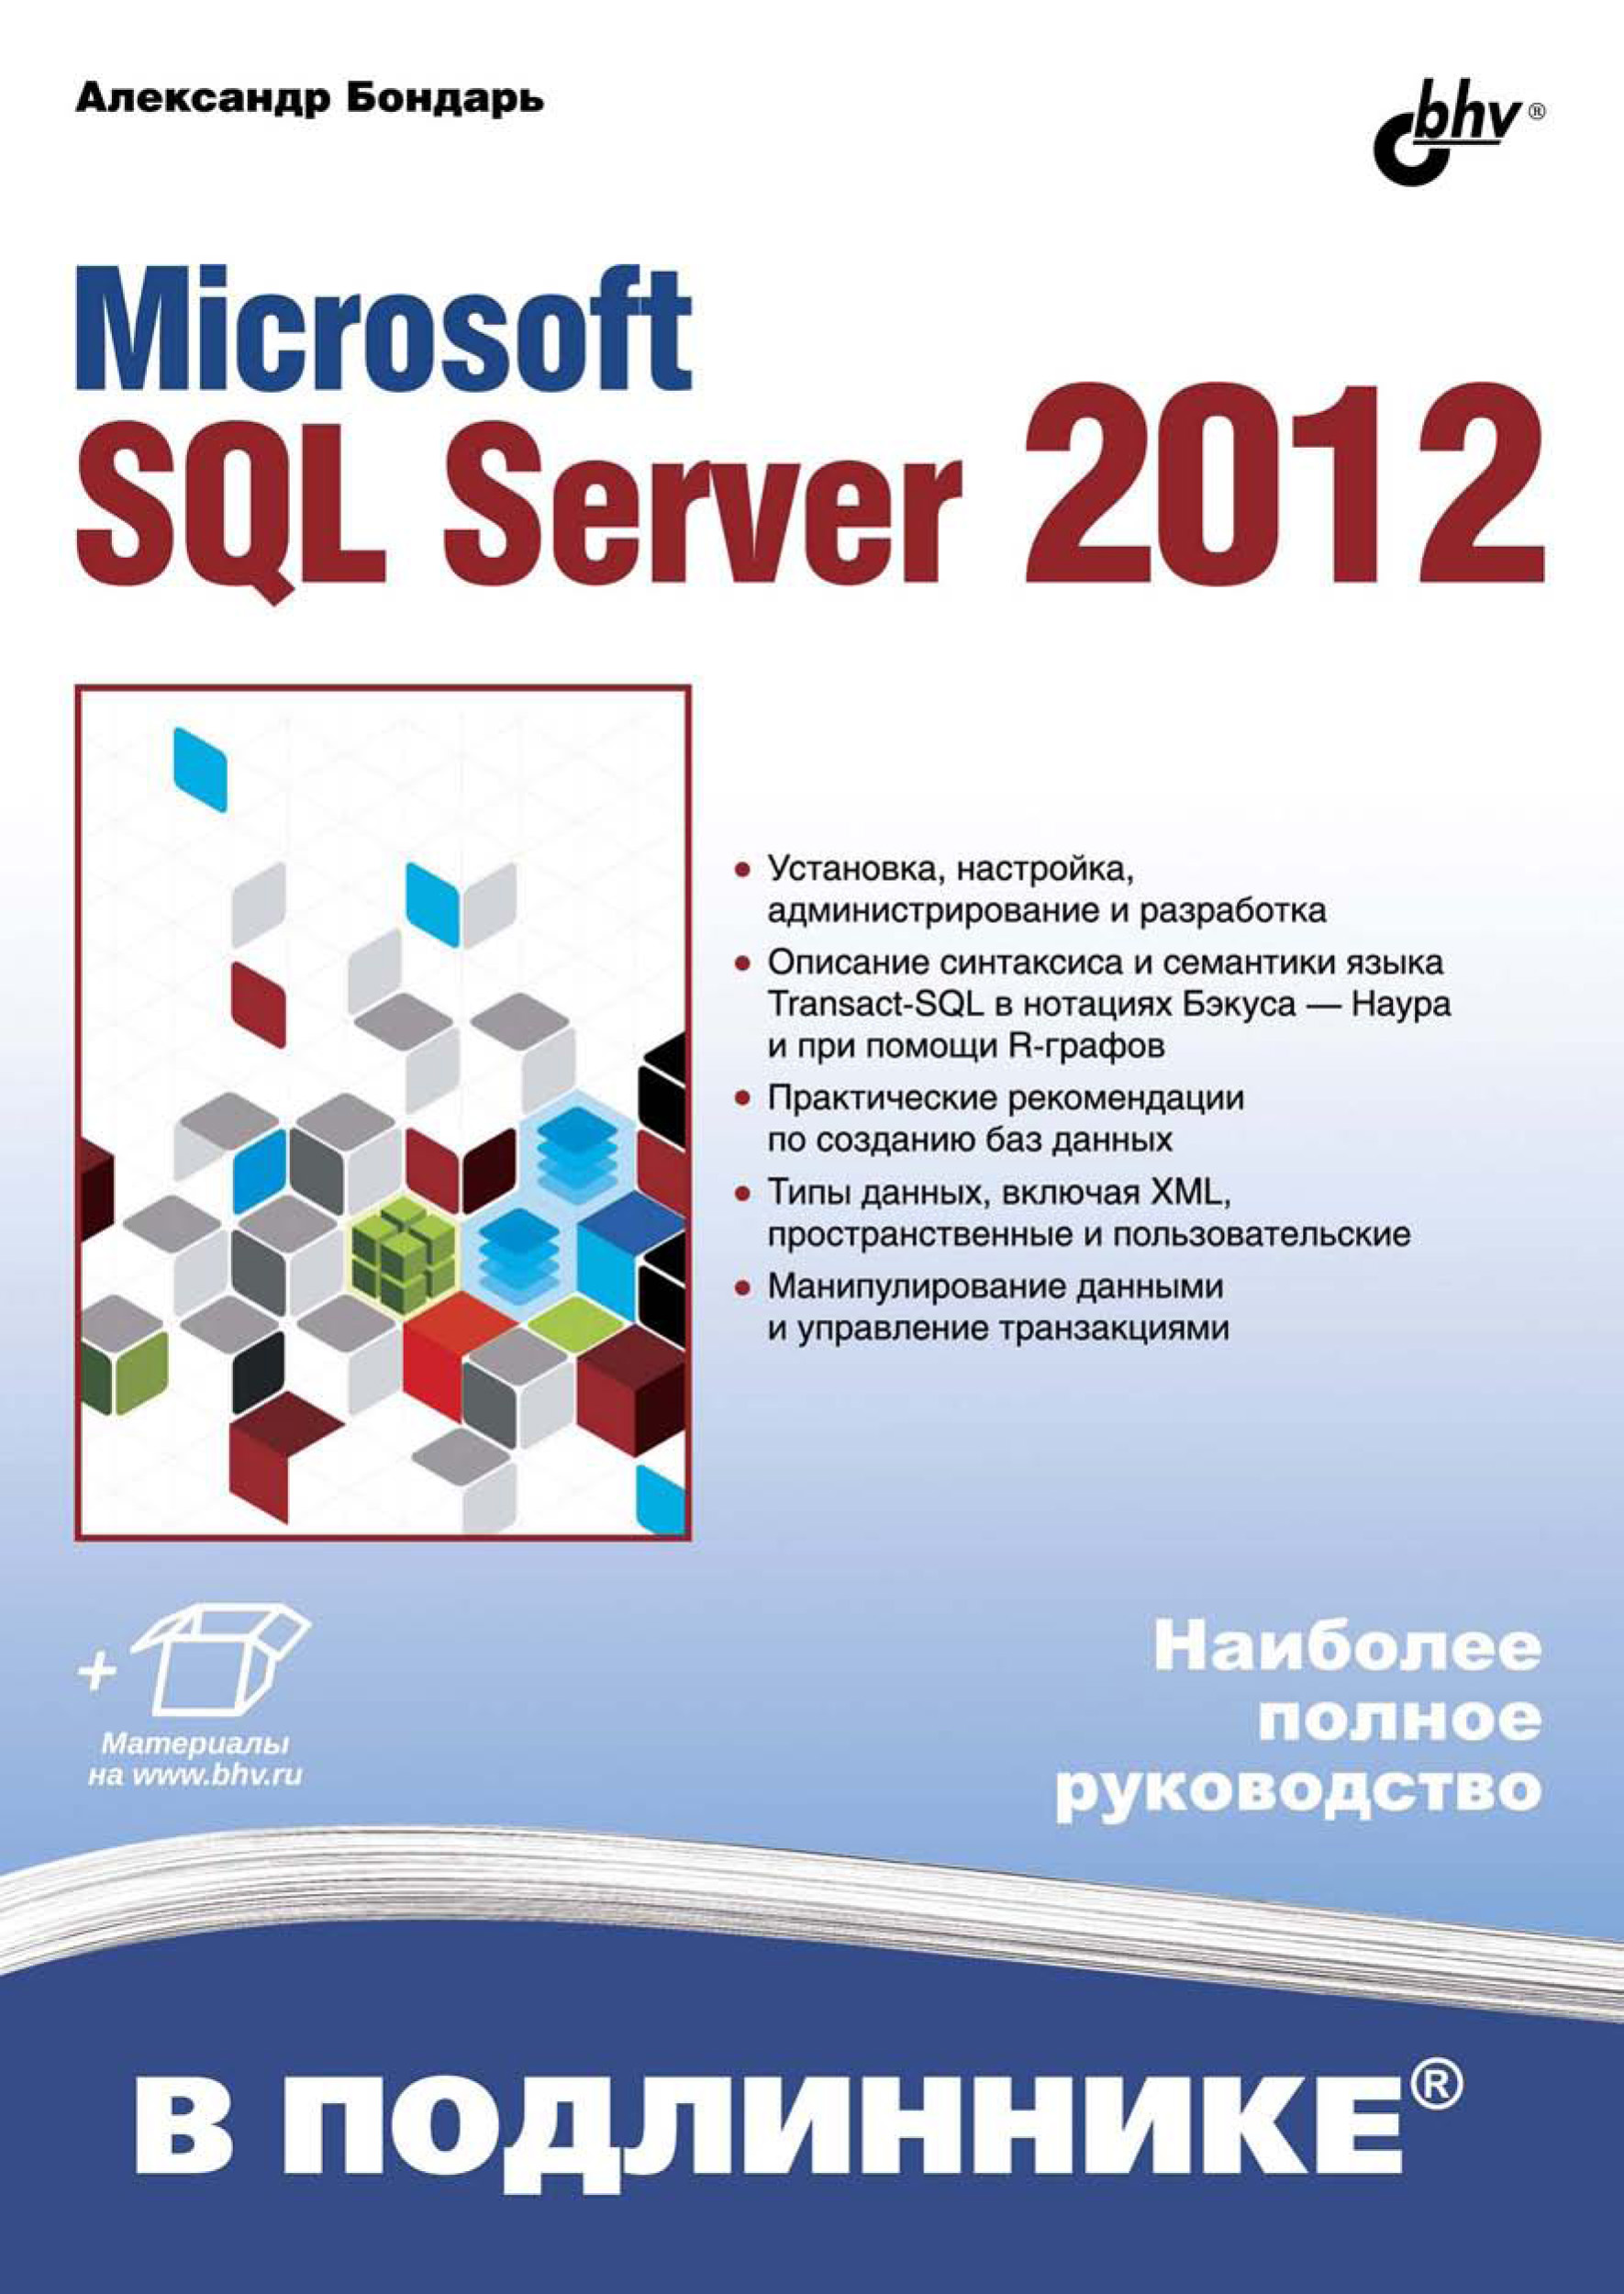 Книга В подлиннике. Наиболее полное руководство Microsoft SQL Server 2012 созданная Александр Бондарь может относится к жанру базы данных, руководства. Стоимость электронной книги Microsoft SQL Server 2012 с идентификатором 7004102 составляет 383.00 руб.